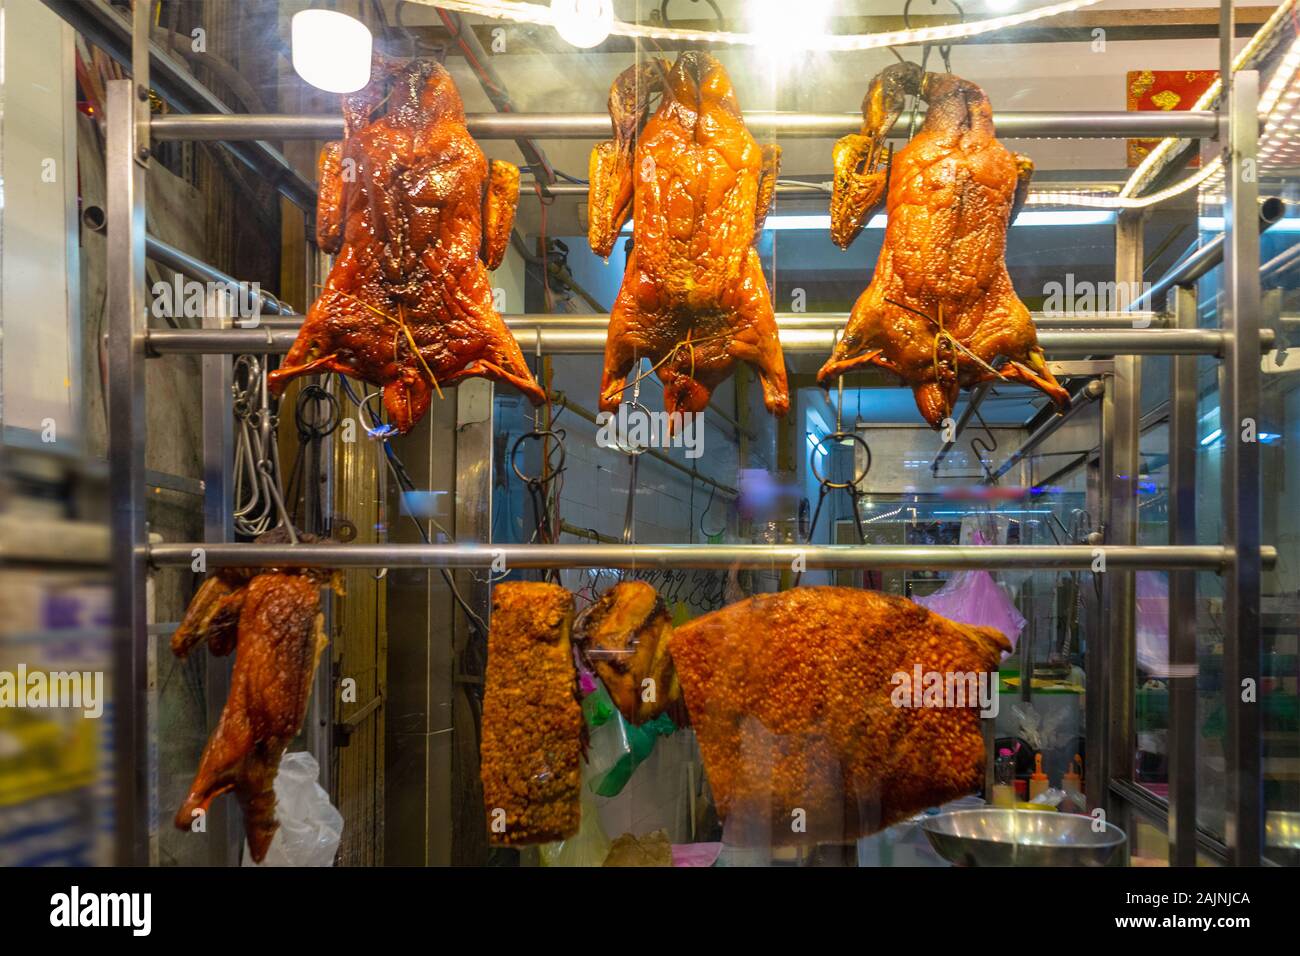 Gebratene Ente in einem Counter display-Fall. Asiatische Street Food. Ho Chi Minh, Vietnam Stockfoto